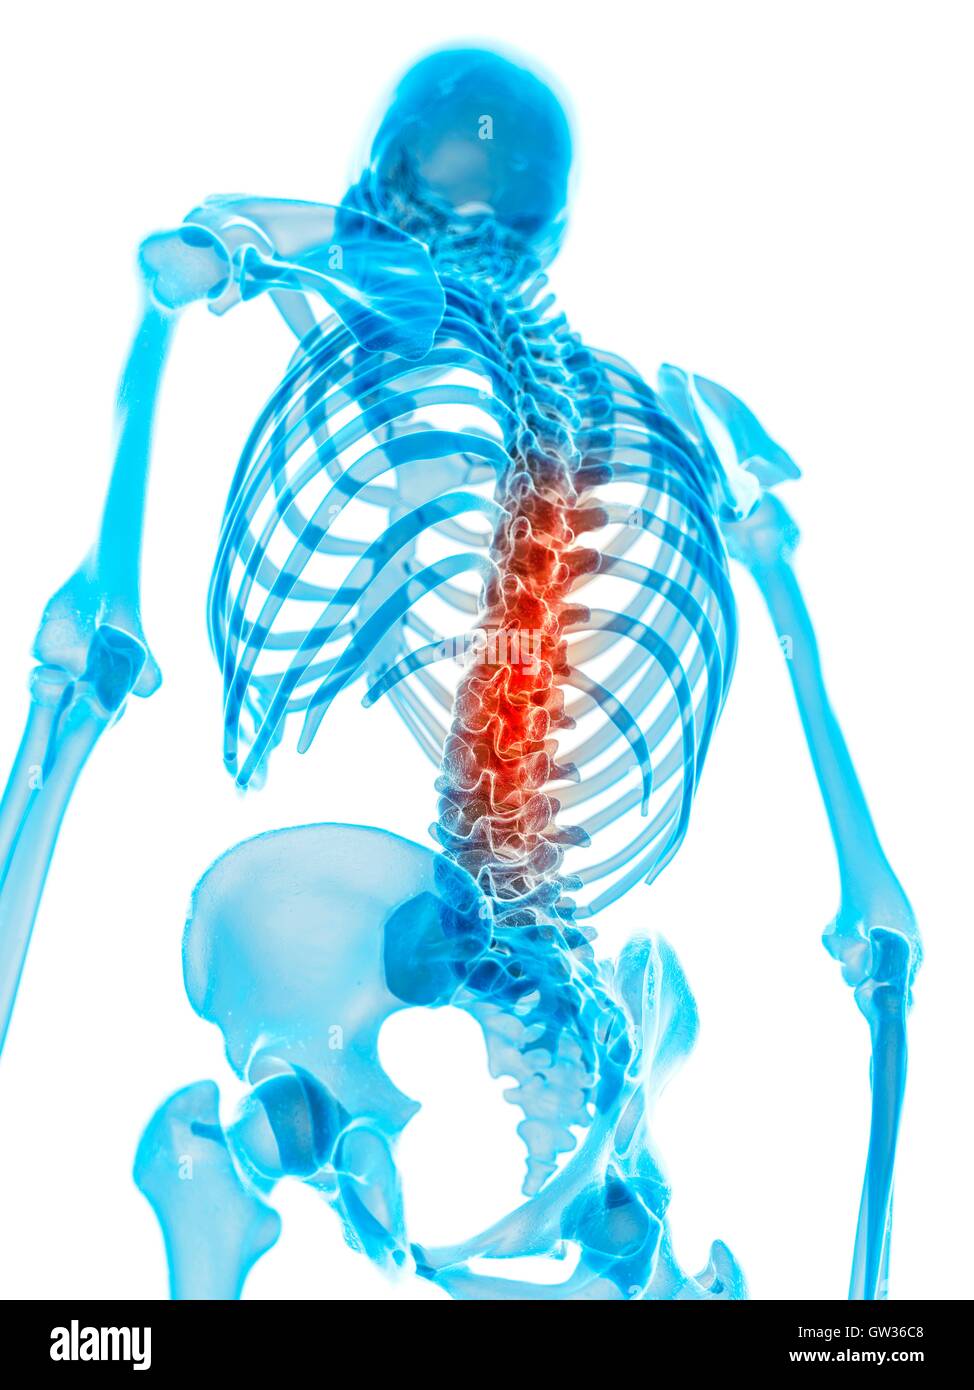 Human spine pain, illustration. Stock Photo